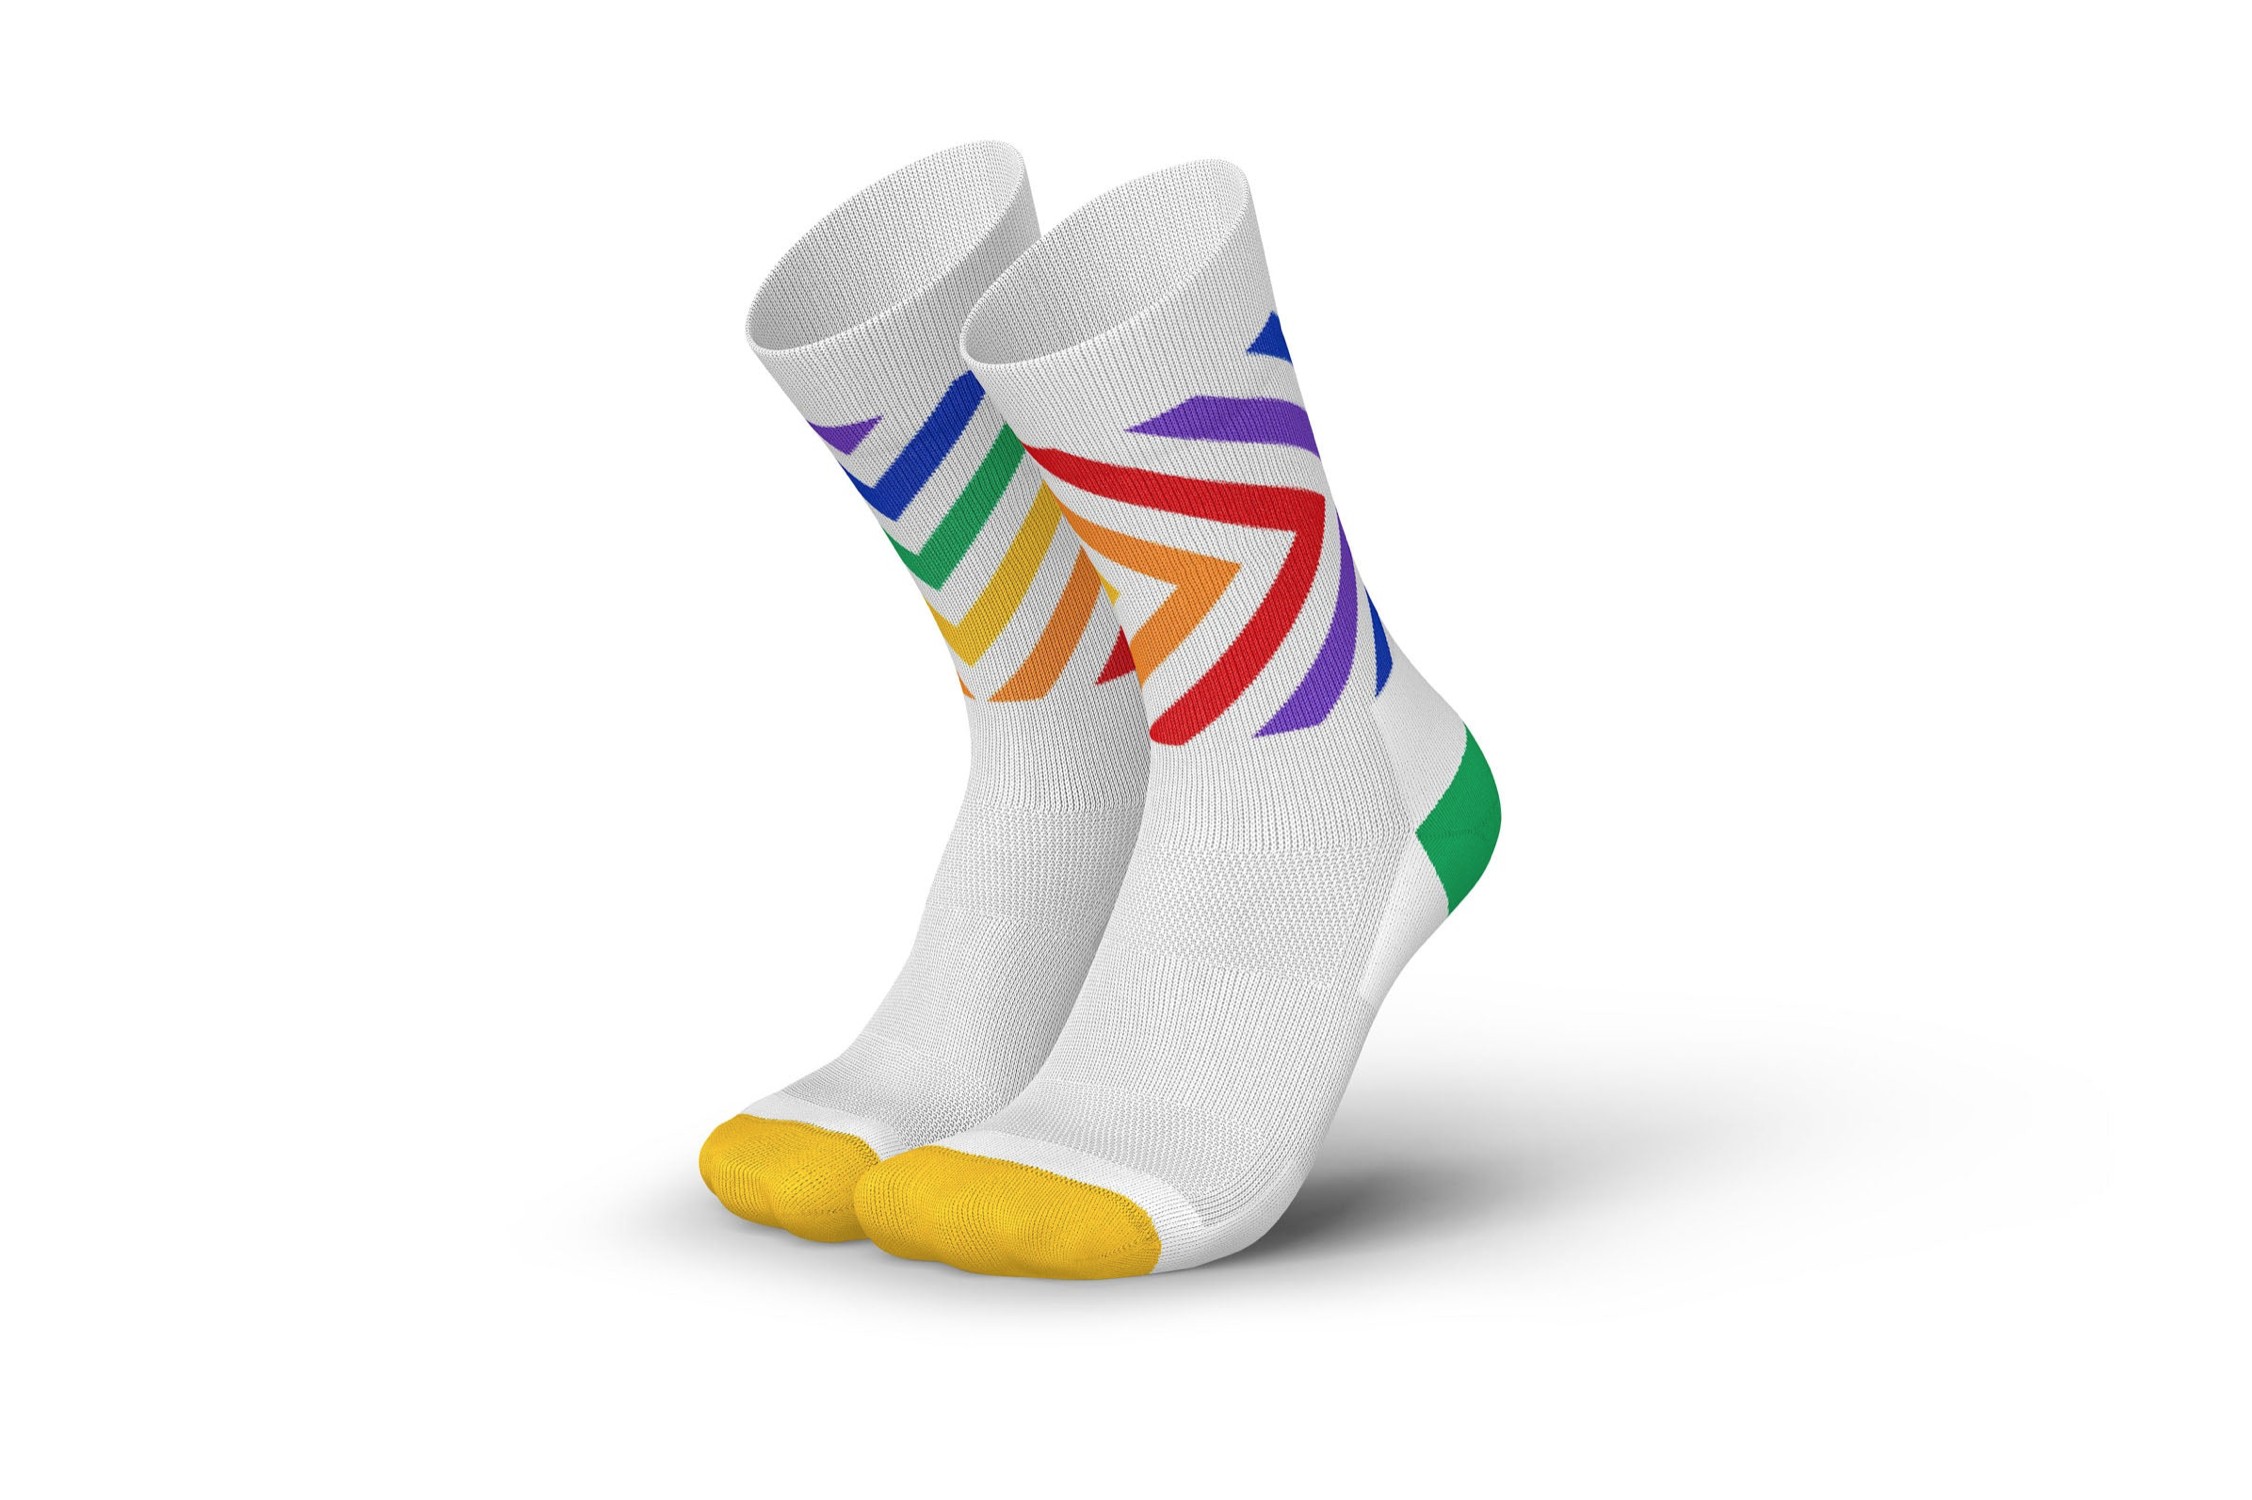 STOX Energy Socks - Chaussettes de sport homme - Chaussettes de compression  qualité supéri